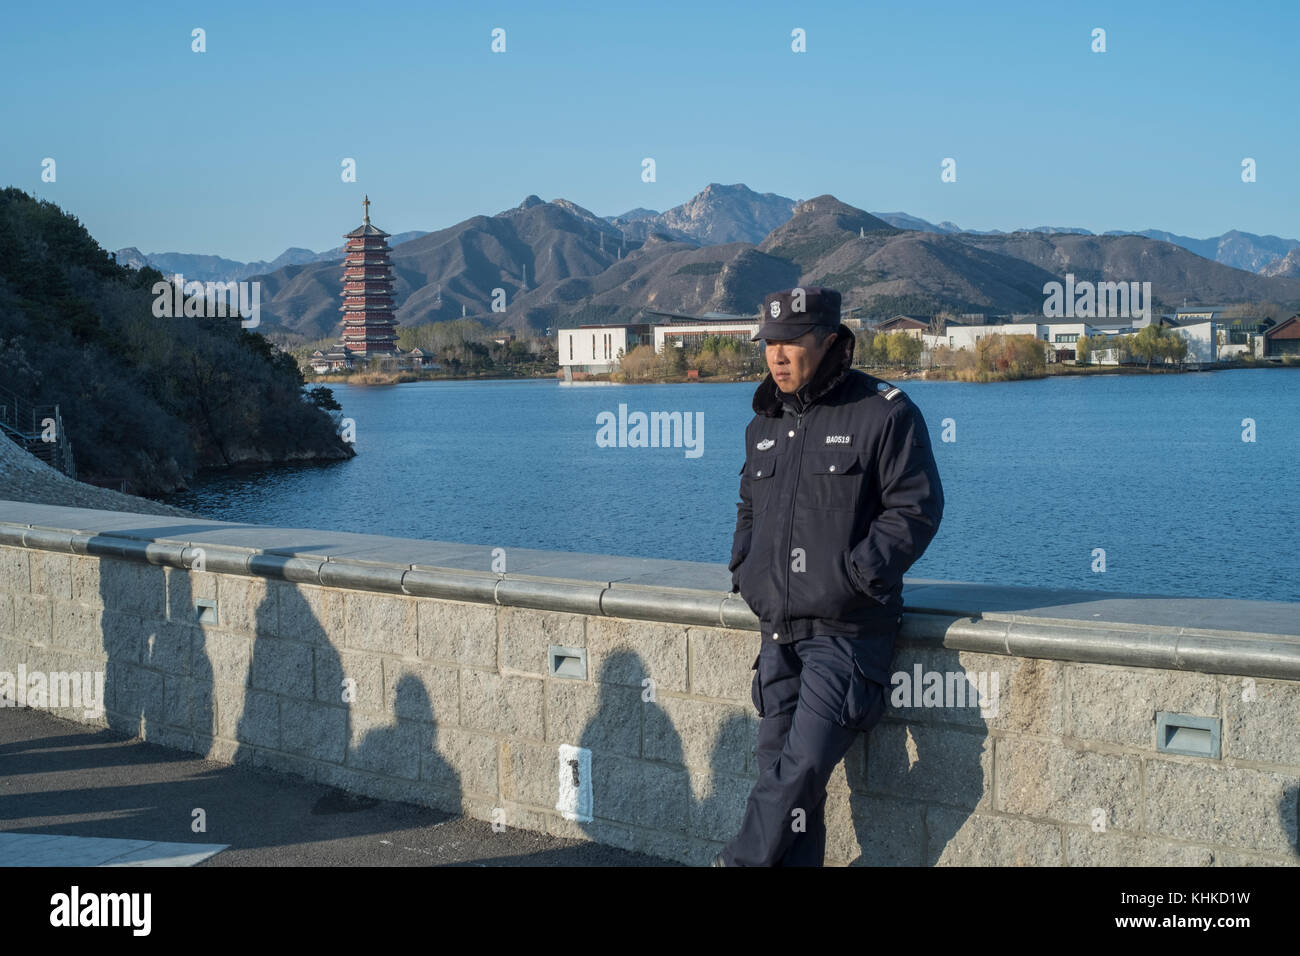 Un garde de sécurité est en service le long du lac yanqi à Huairou, Beijing, Chine. Banque D'Images